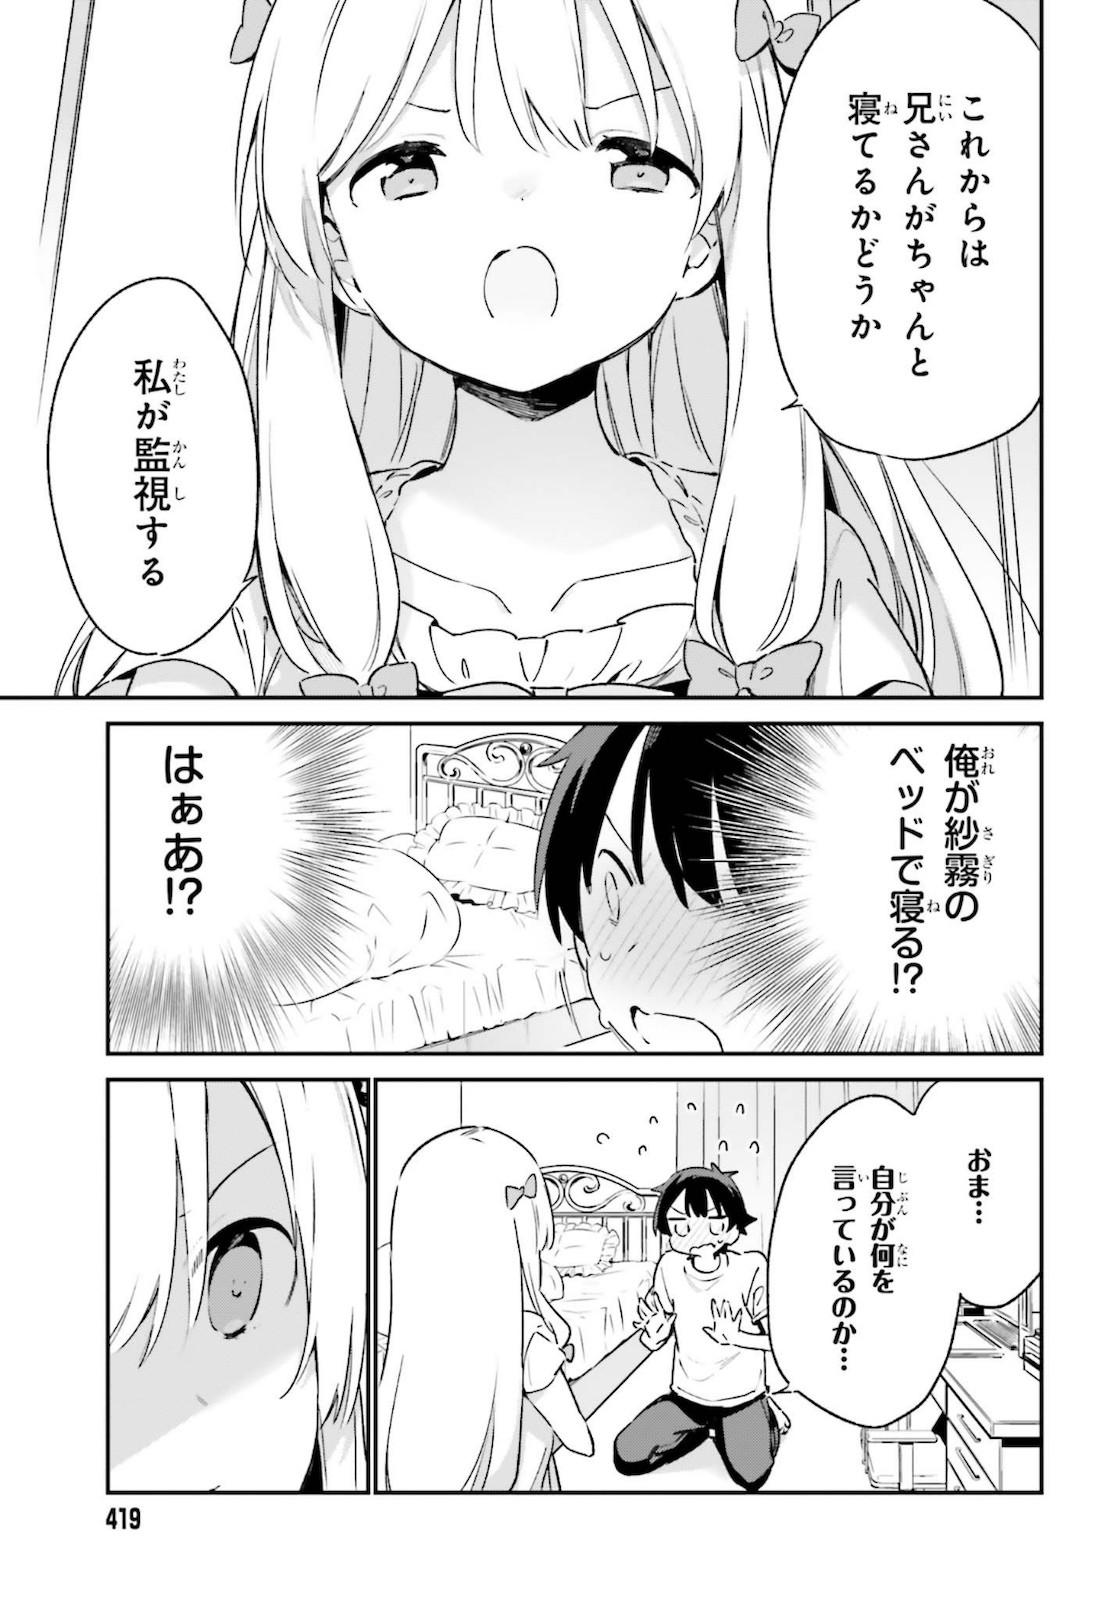 Ero Manga Sensei - Chapter 75 - Page 27